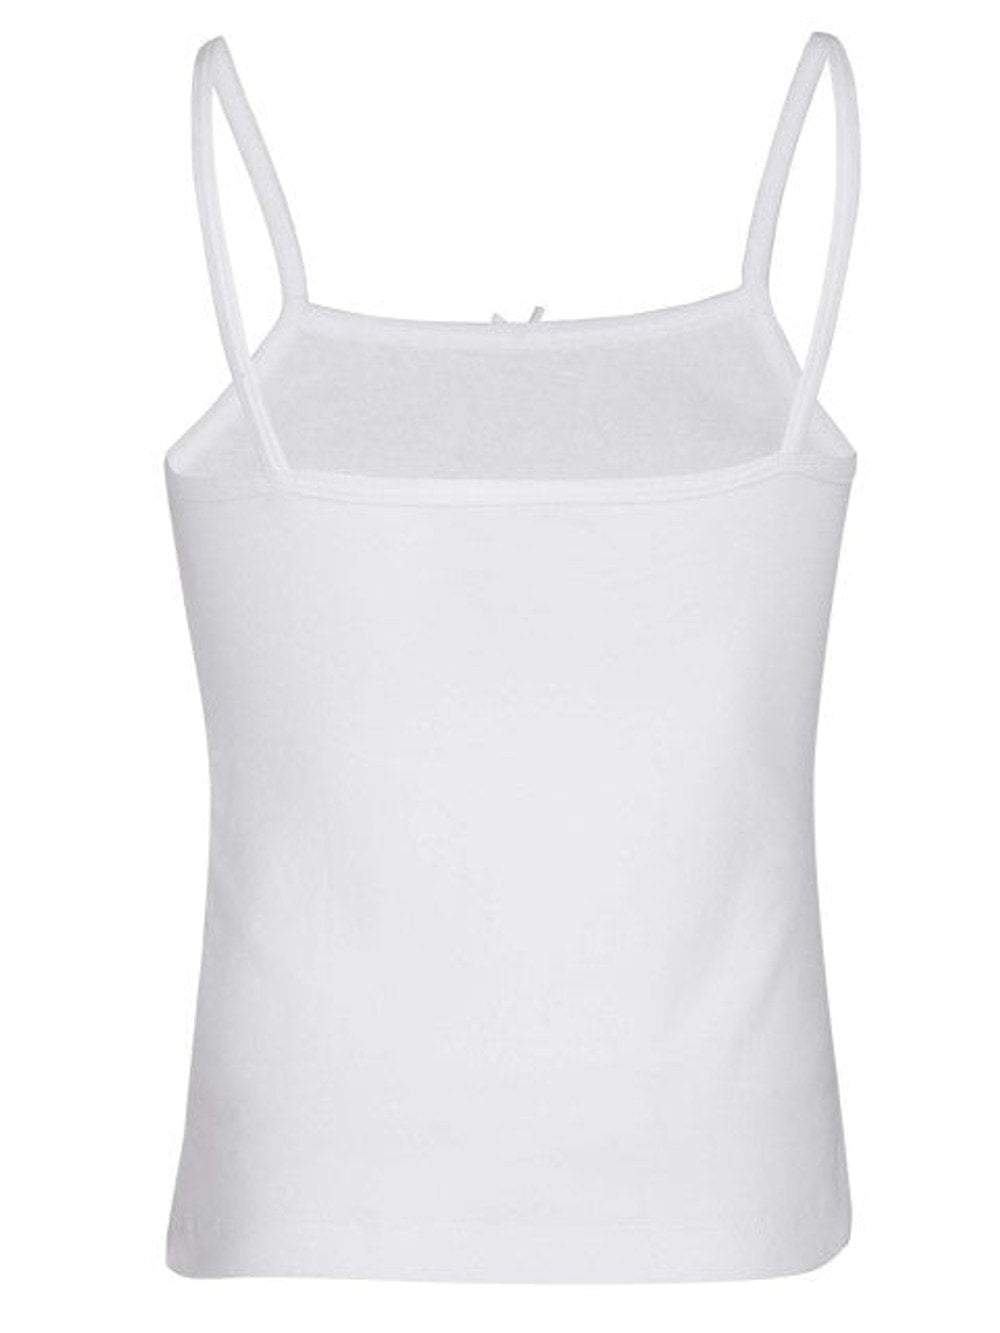 Girls Camisole & Short (4 Pieces pack)-Pierre Donna-girls underwear set